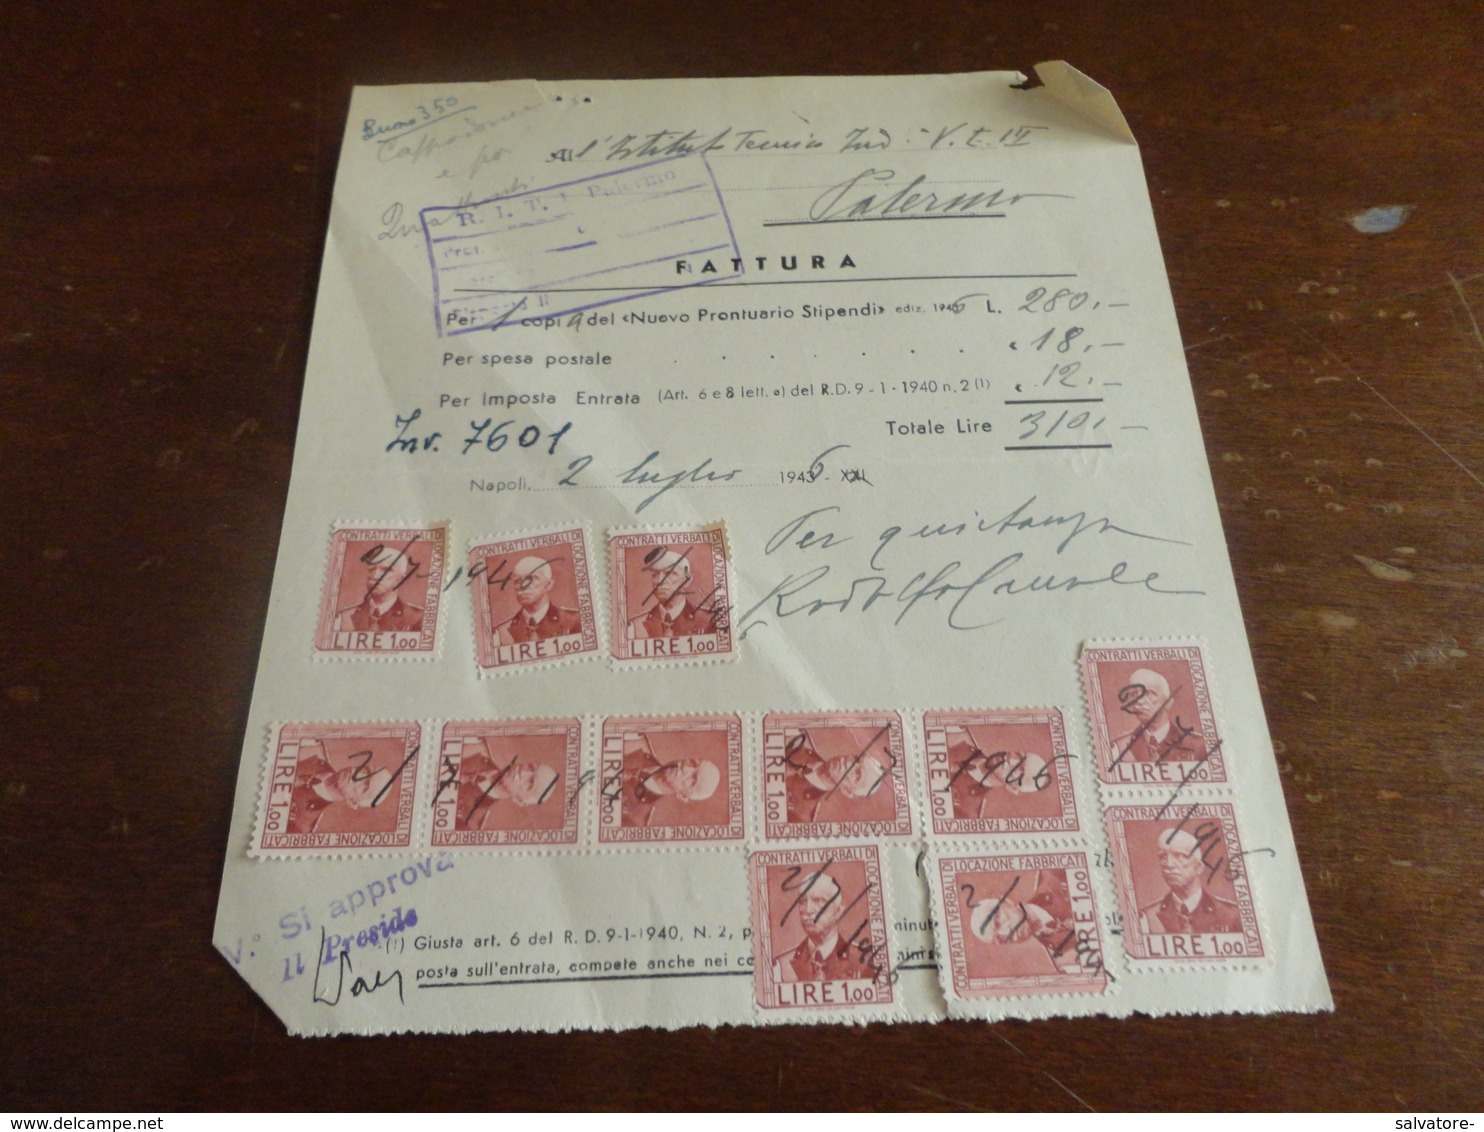 MARCHE DA BOLLO CONTRATTI VERBALI DI LOCAZIONE FABBRICATI -12 PEZZI DA 1 LIRA -1946 - Revenue Stamps